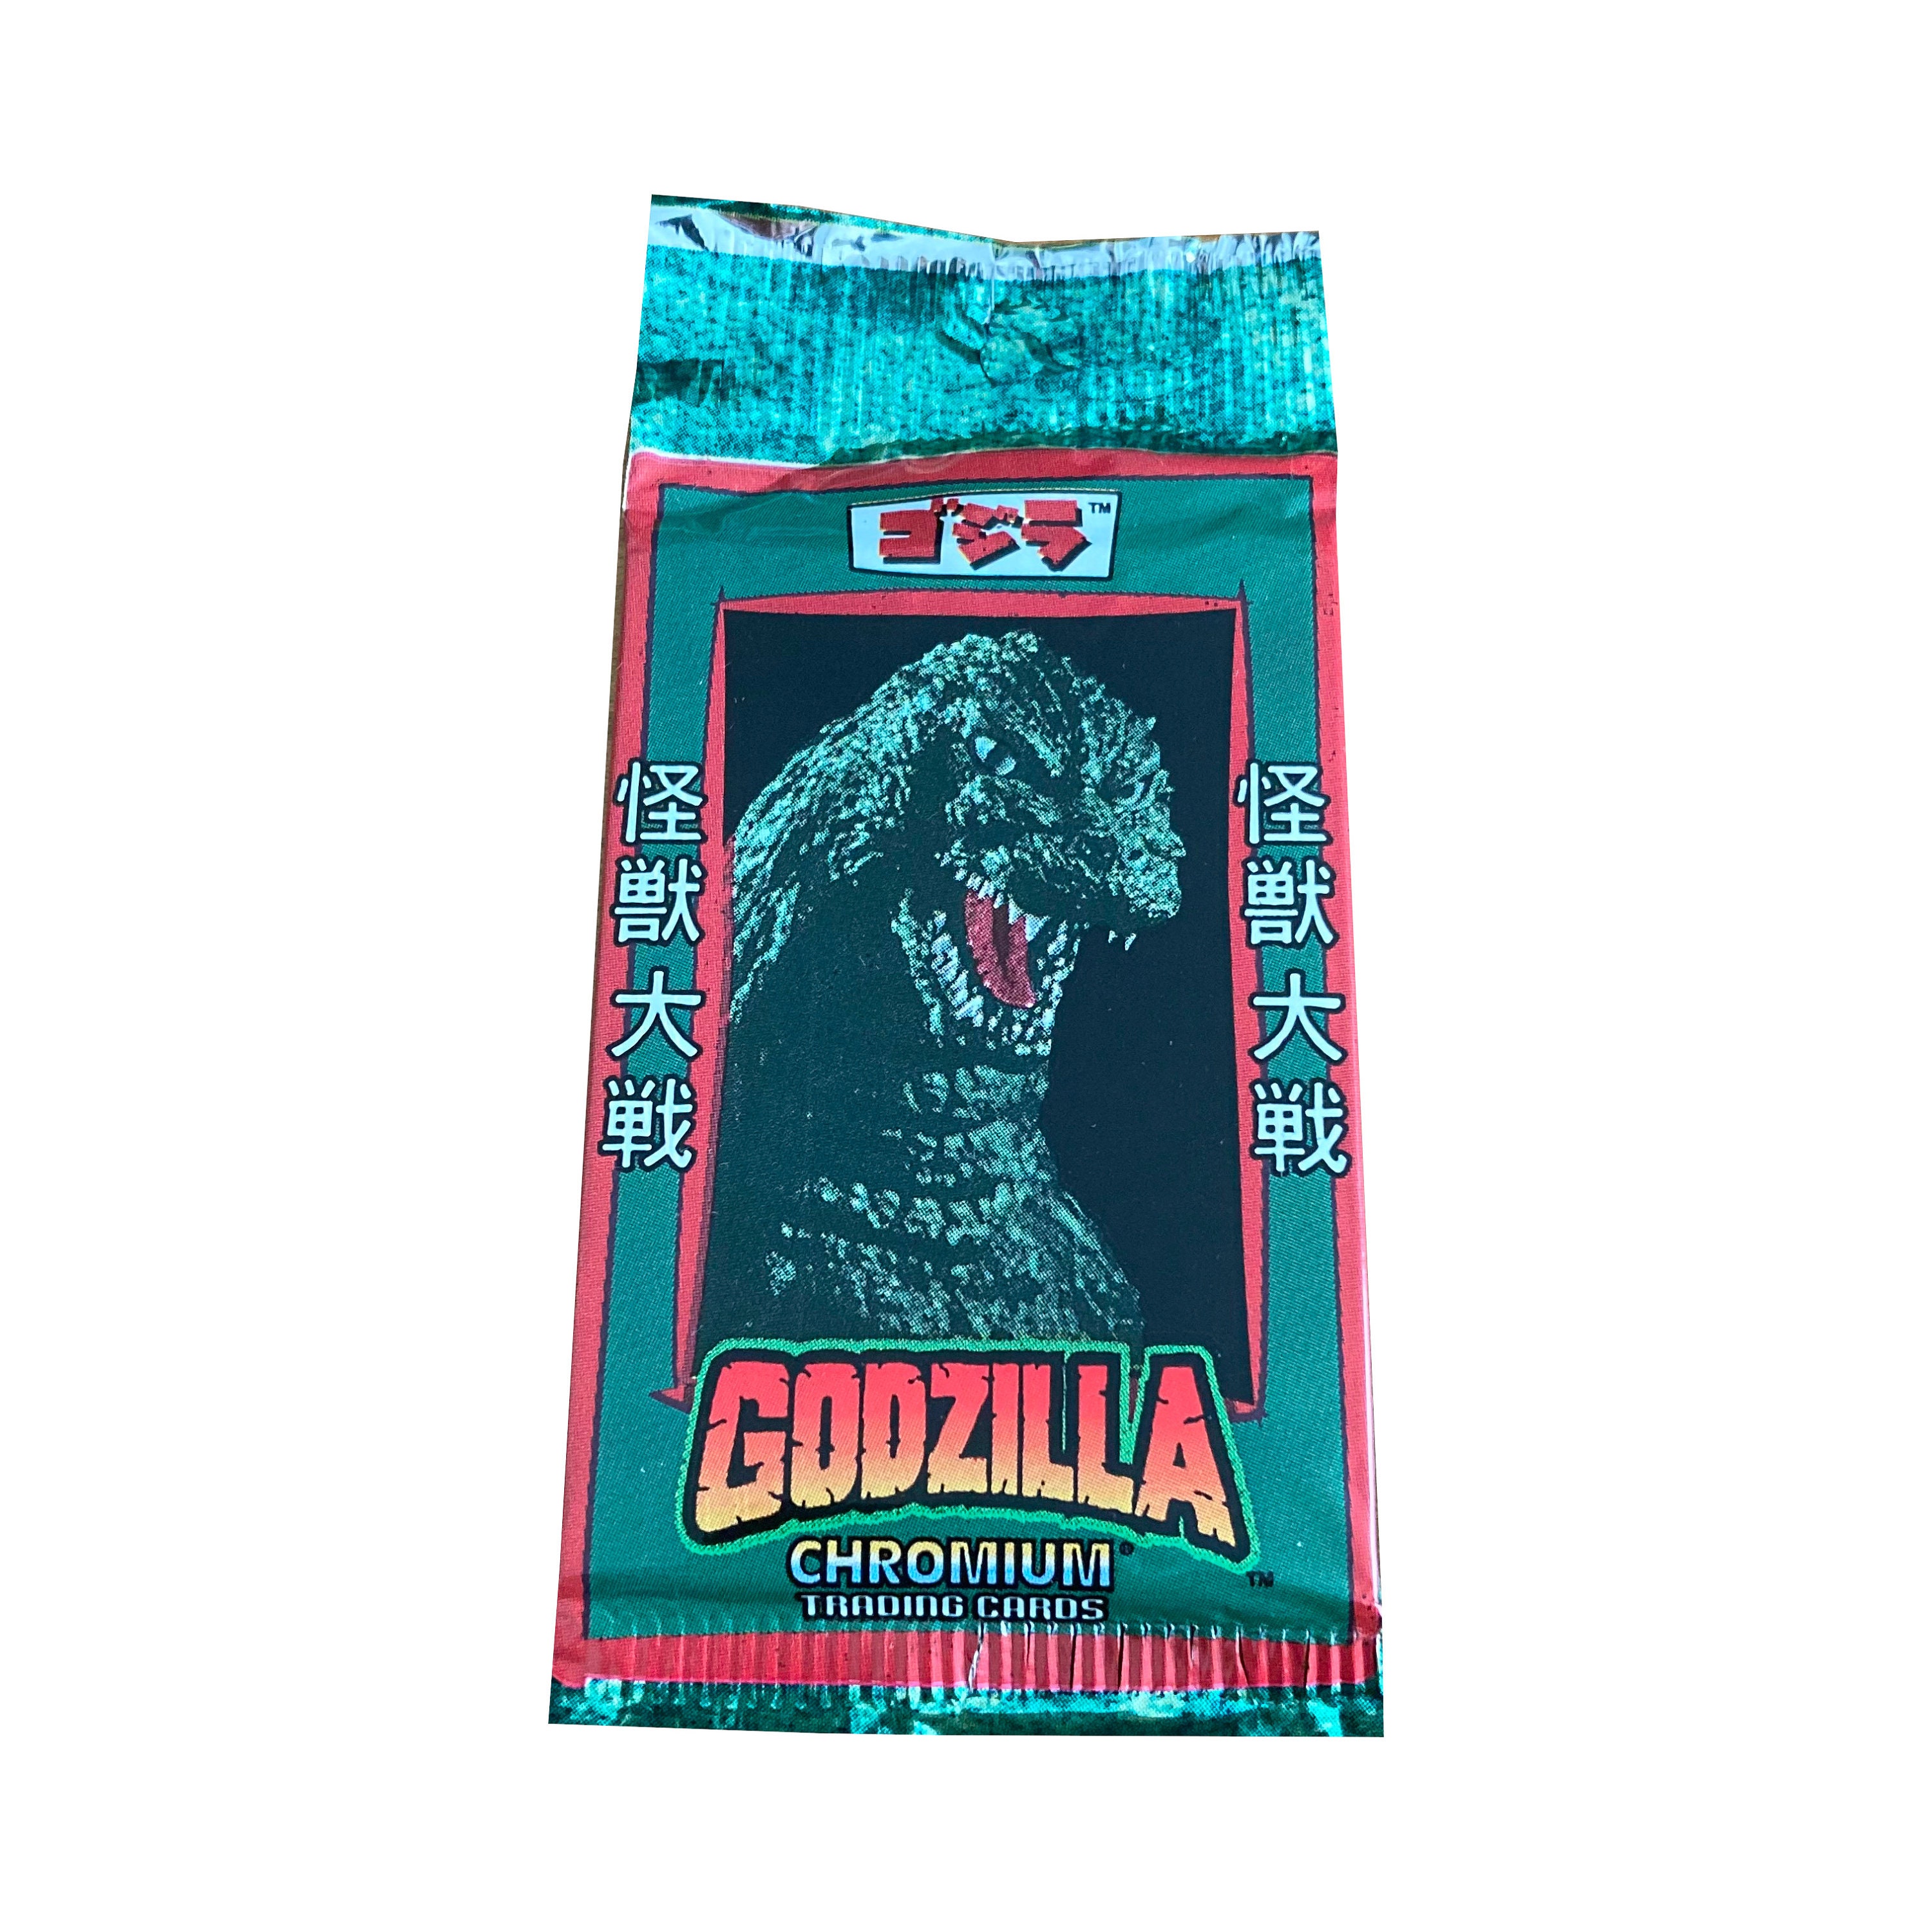 Godzilla Series 5 3D Foam Bag Clip Random 6-Pack